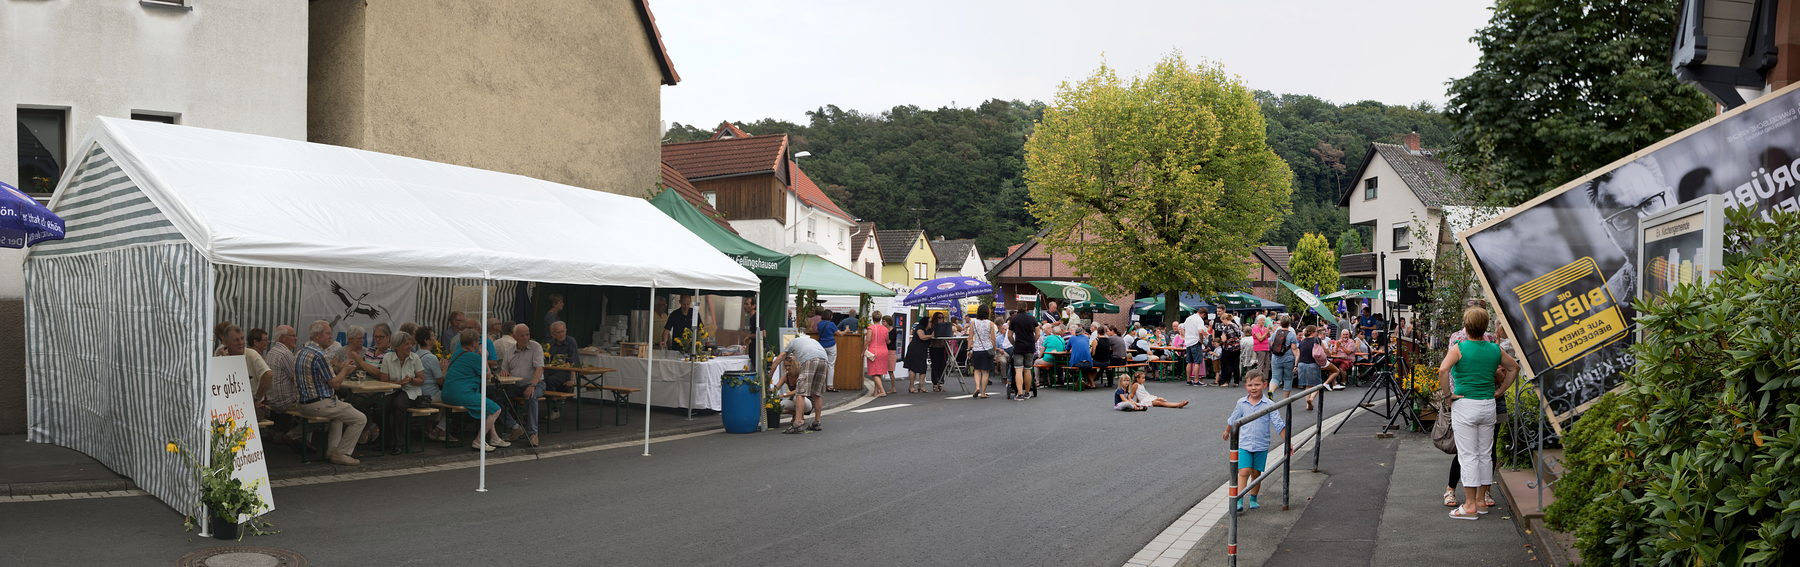 2017-08-26 - Brunnenfest Pa08.jpg